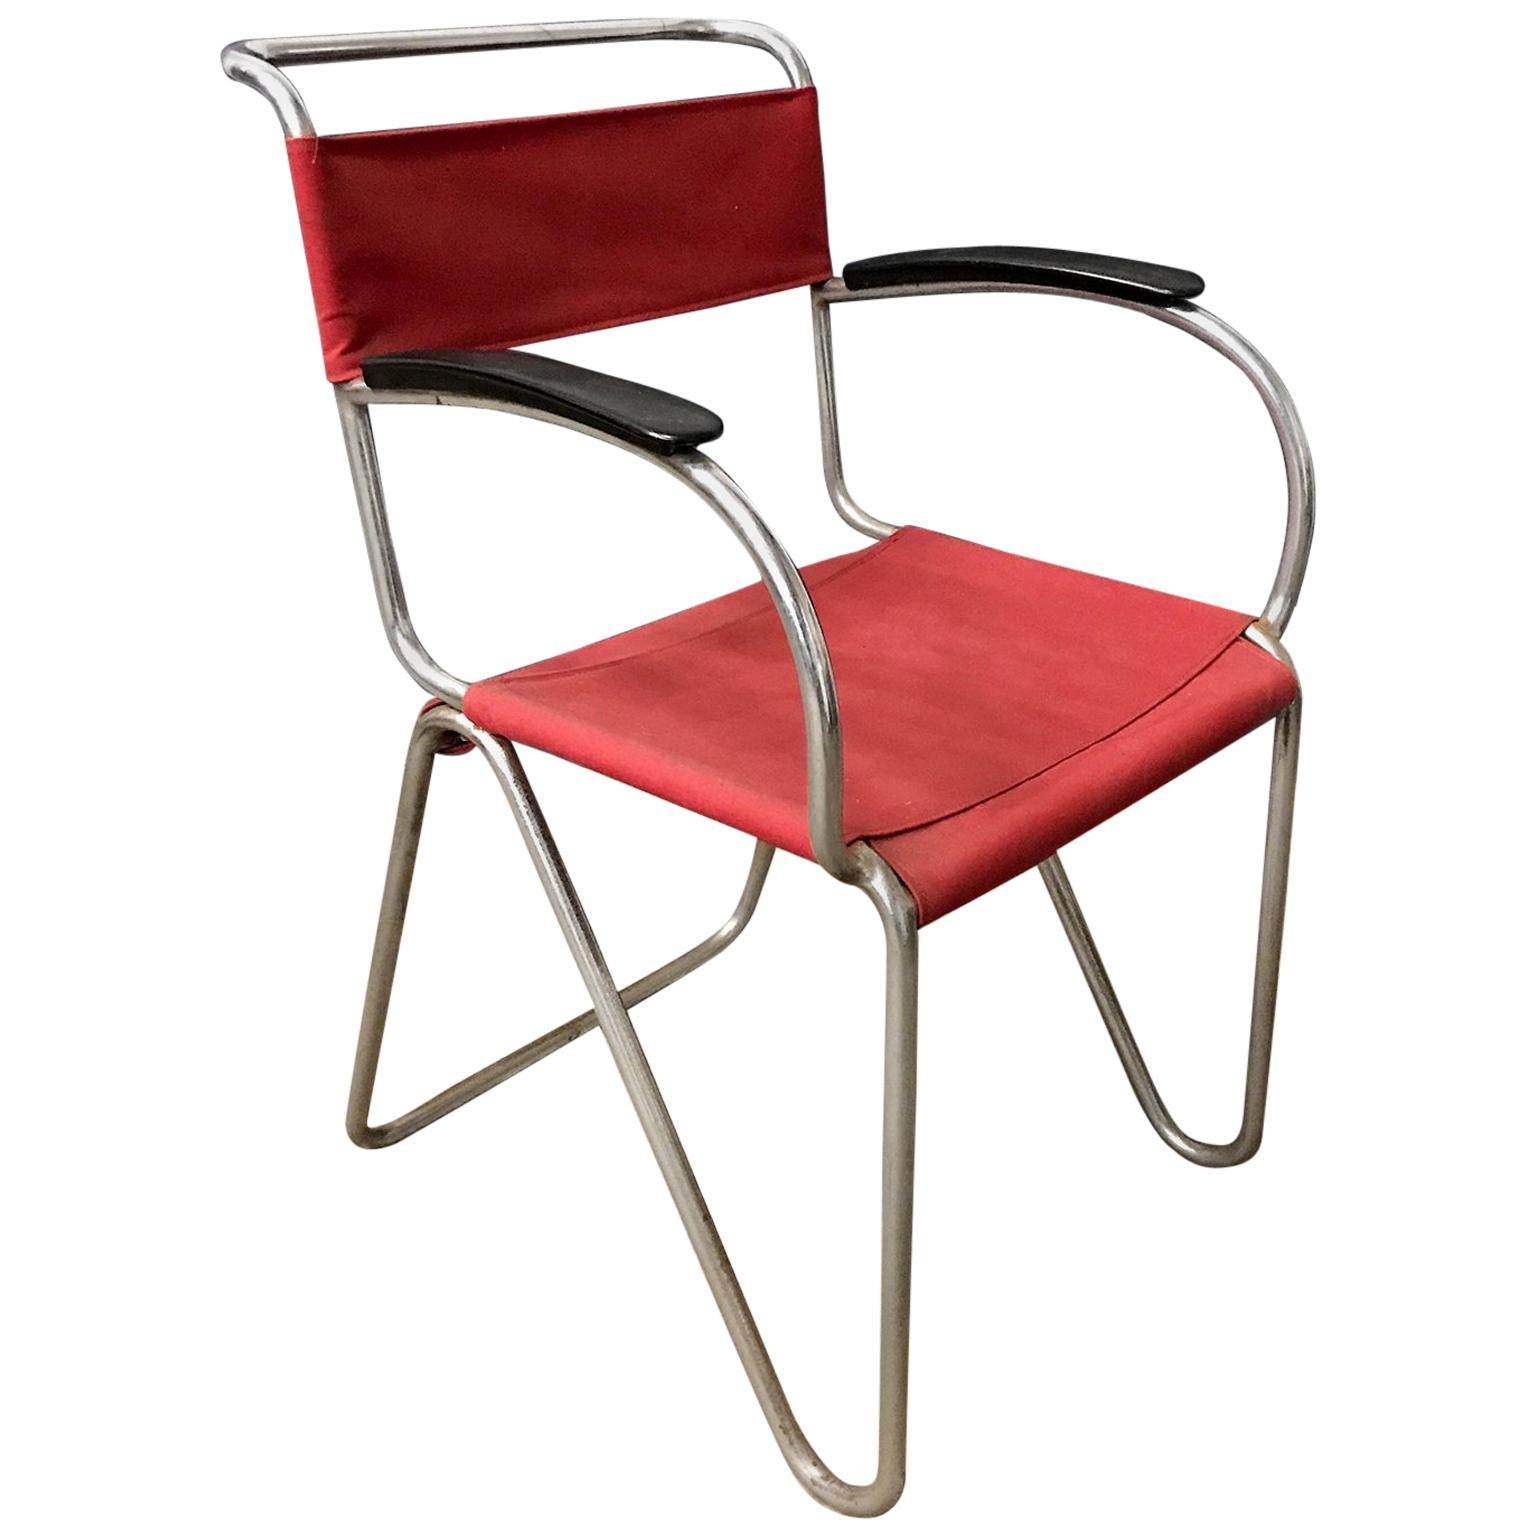 1930, W.H. Gispen für Gispen, Diagonal-Stuhl 1930 in Seil und neuem rotem Segeltuchbezug